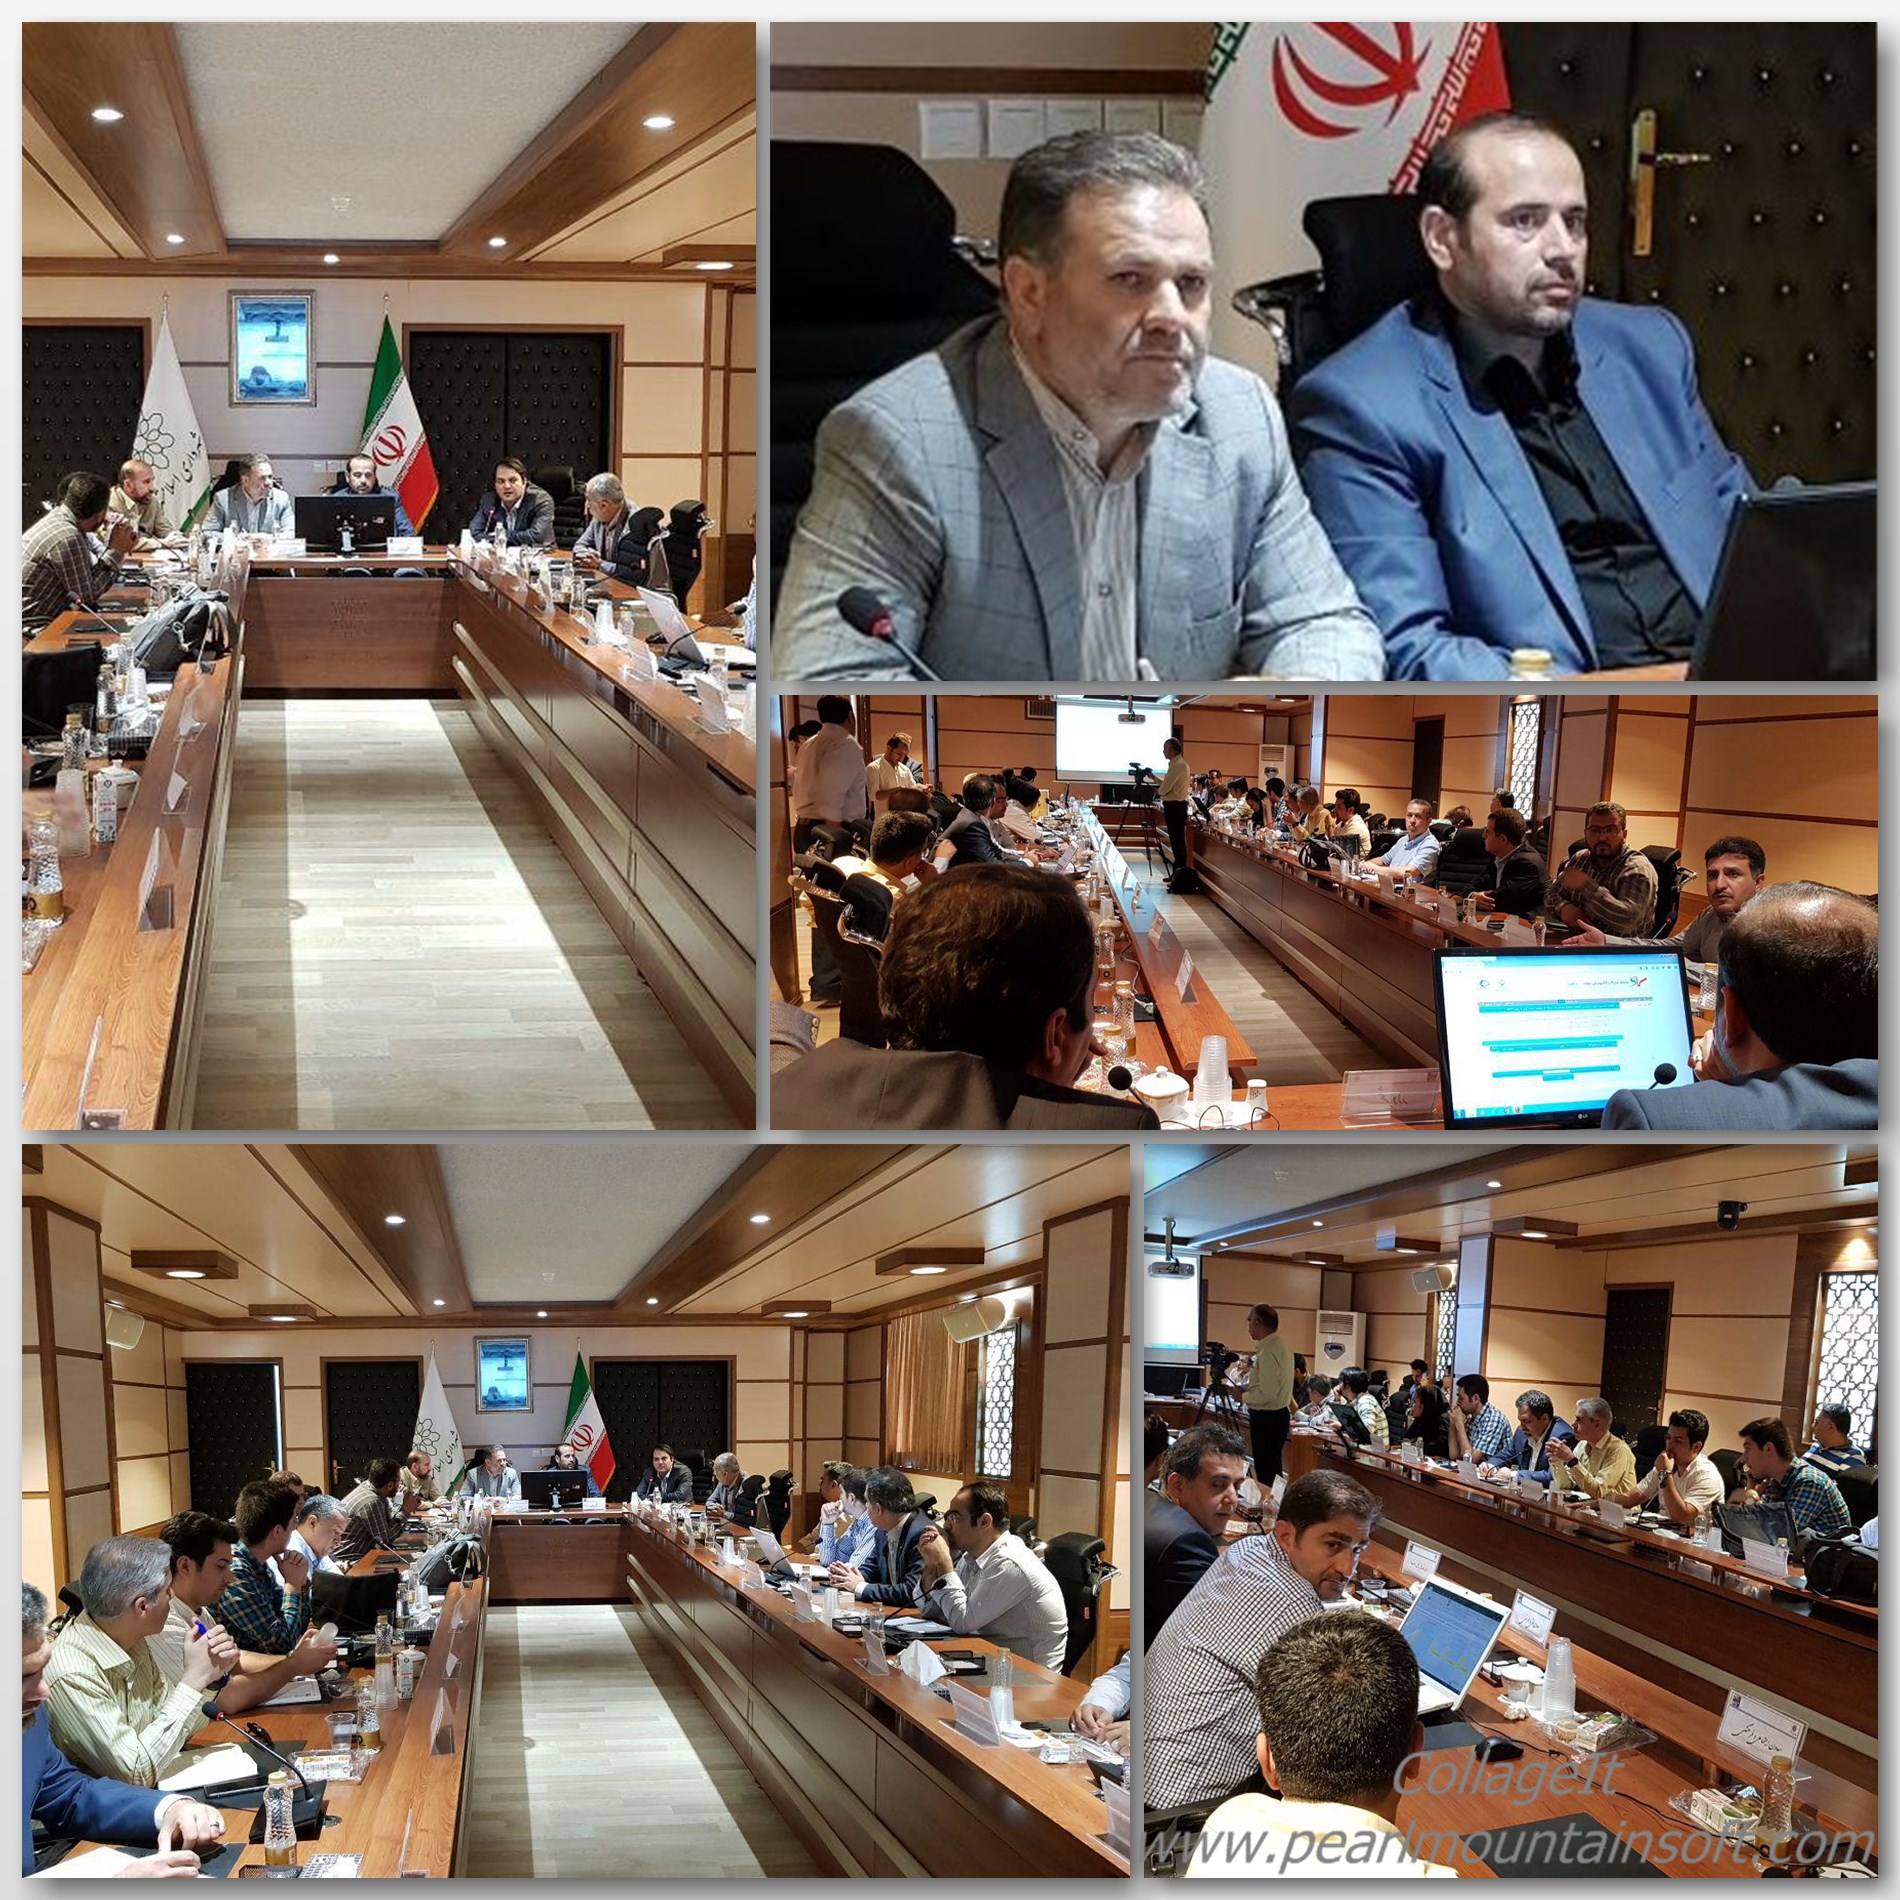 برگزاری جلسه کمیسیون عالی معاملات شهرداری اسلامشهر برای تعیین پیمانکار احداث تونل مترو اسلامشهر